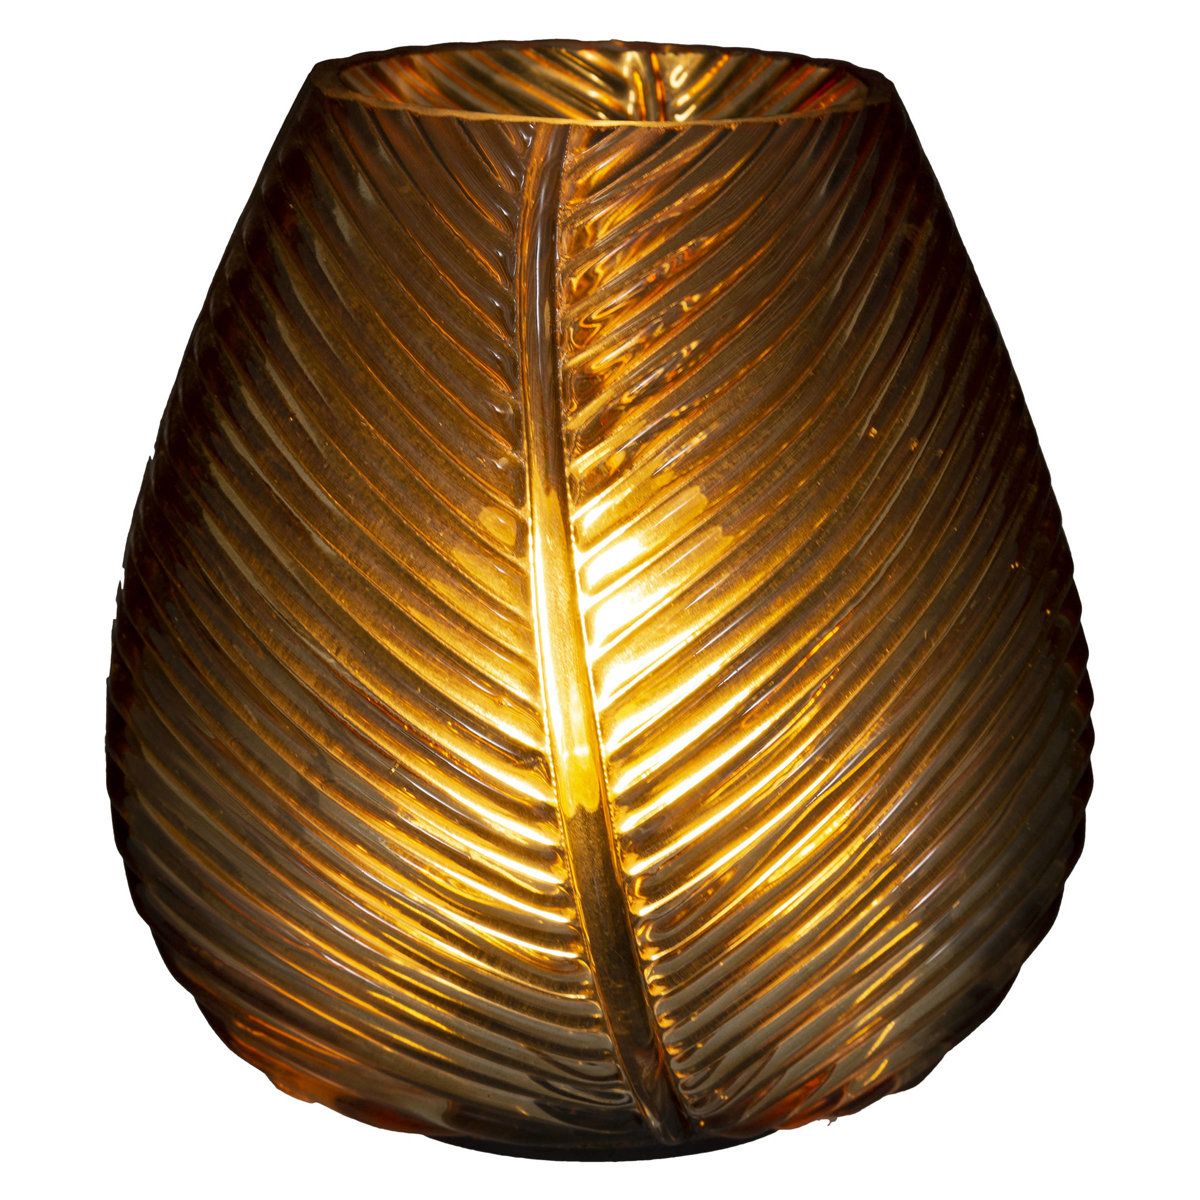 Atmosphera Skleněná lampa Palmový list, 15 cm, hnědá - EMAKO.CZ s.r.o.